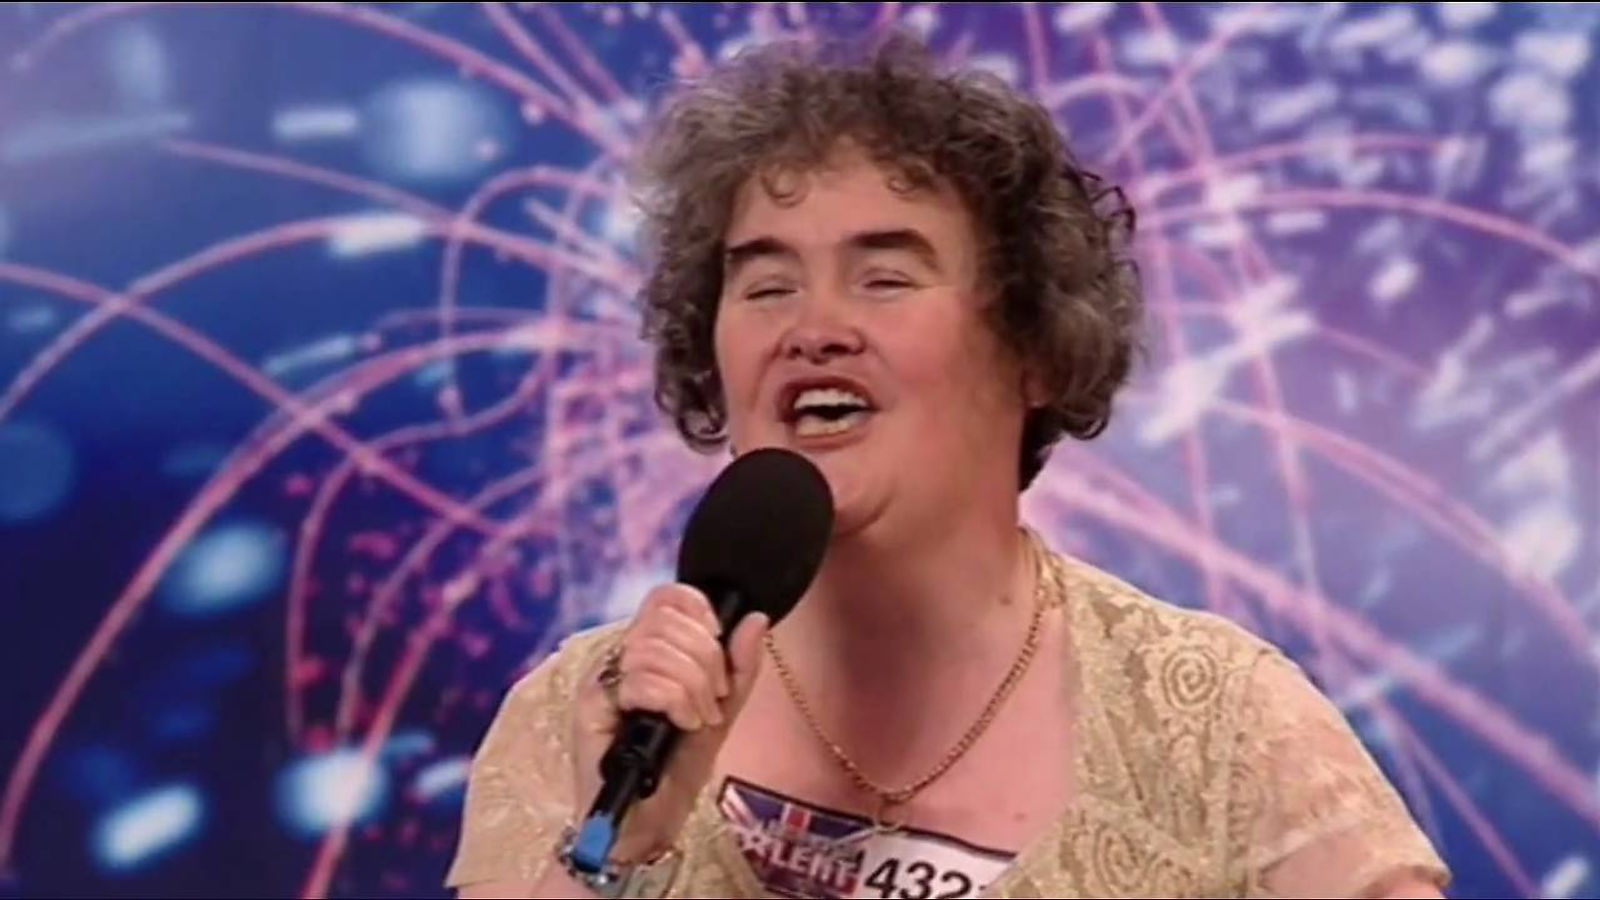 "Million Dollar Arm" and the Susan Boyle audition - 1-25-15